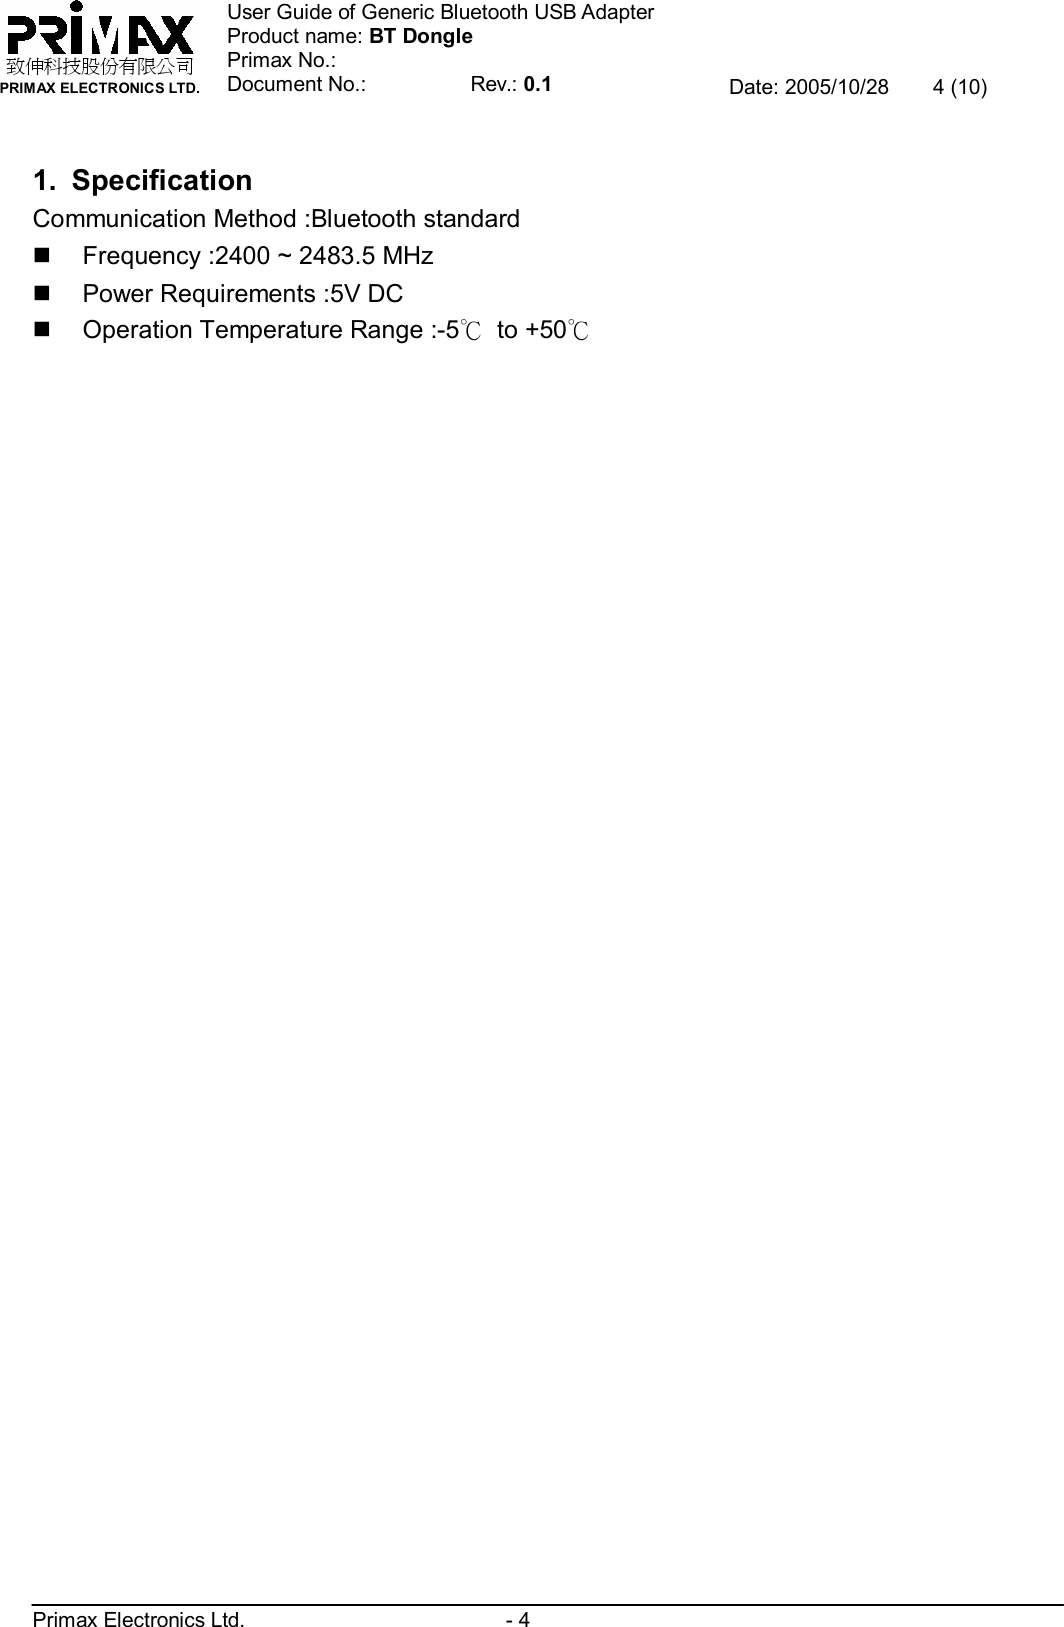    致伸科技股份有限公司 PRIMAX ELECTRONICS LTD. User Guide of Generic Bluetooth USB Adapter Product name: BT Dongle Primax No.: Document No.:          Rev.: 0.1 Date: 2005/10/28  4 (10)  Primax Electronics Ltd.                         - 4  1. Specification Communication Method :Bluetooth standard n Frequency :2400 ~ 2483.5 MHz n Power Requirements :5V DC n Operation Temperature Range :-5℃ to +50℃ 